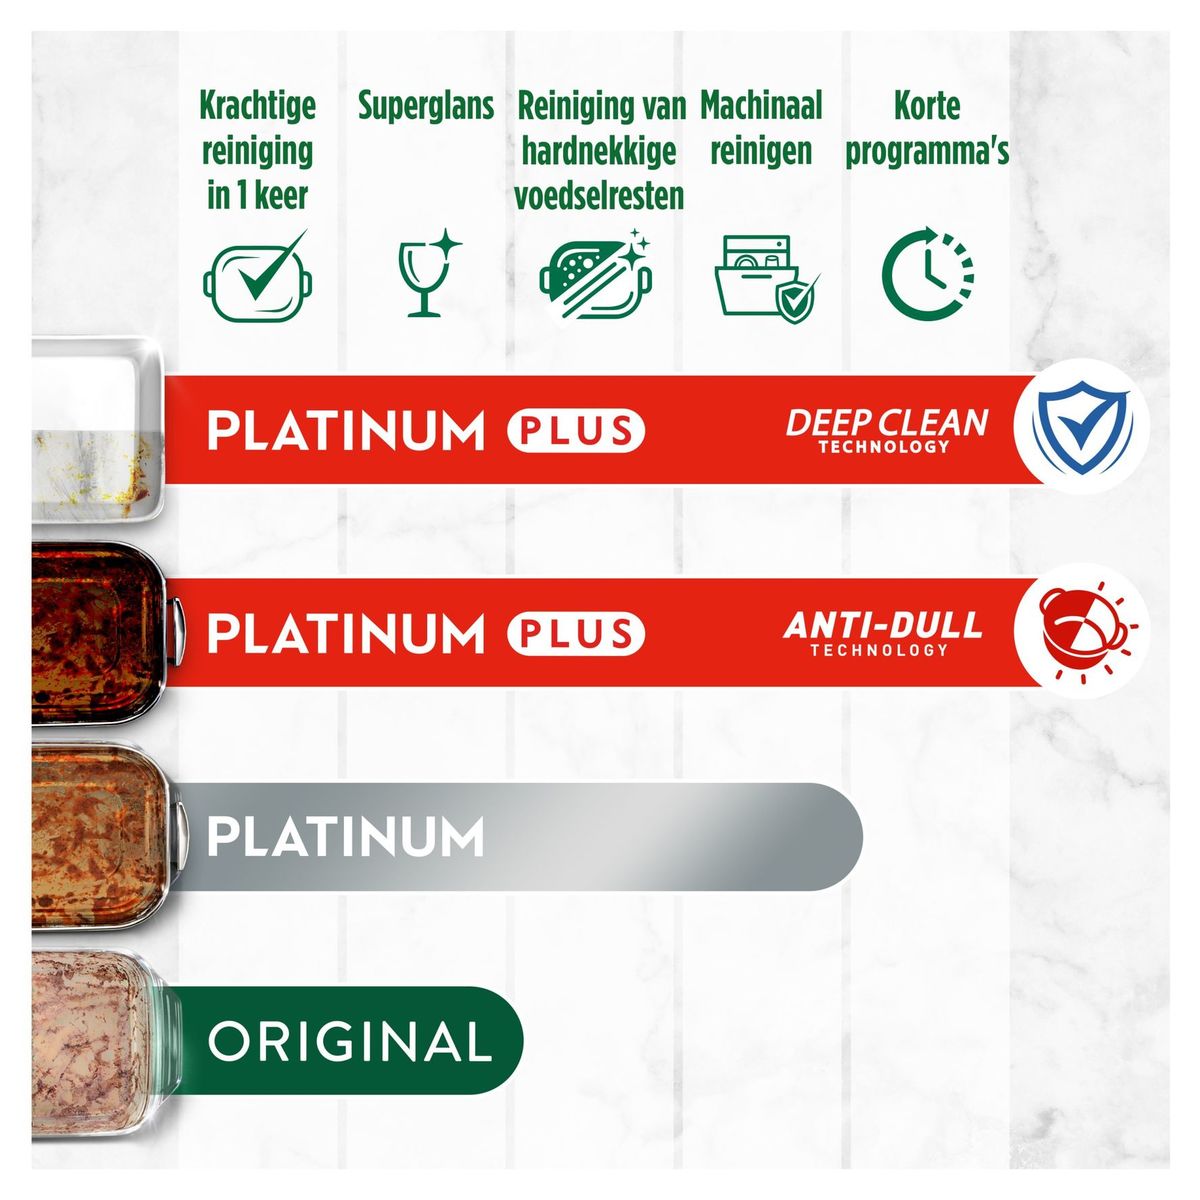 Dreft Platinum Plus All In One Vaatwastabletten Anti-dofheidstechnologie 33X